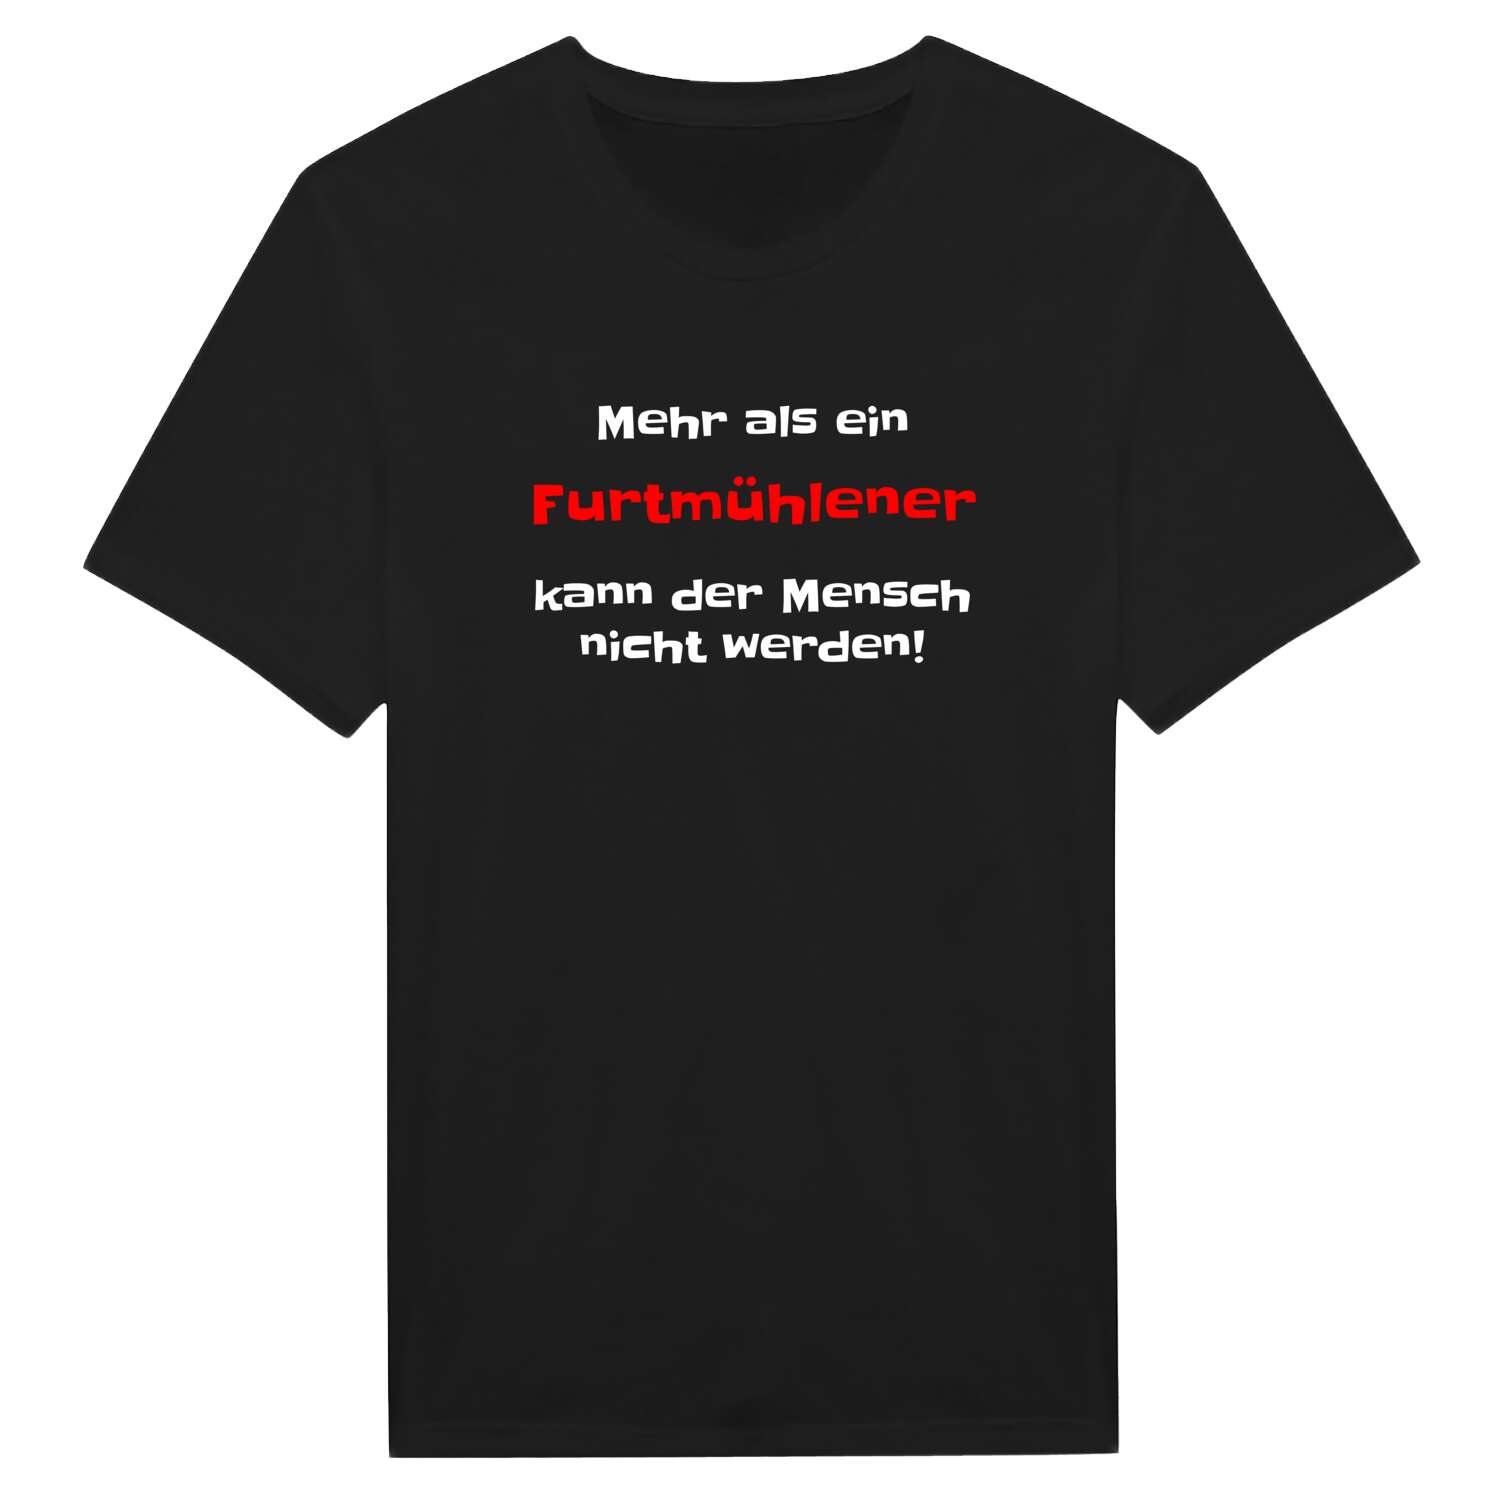 Furtmühle T-Shirt »Mehr als ein«